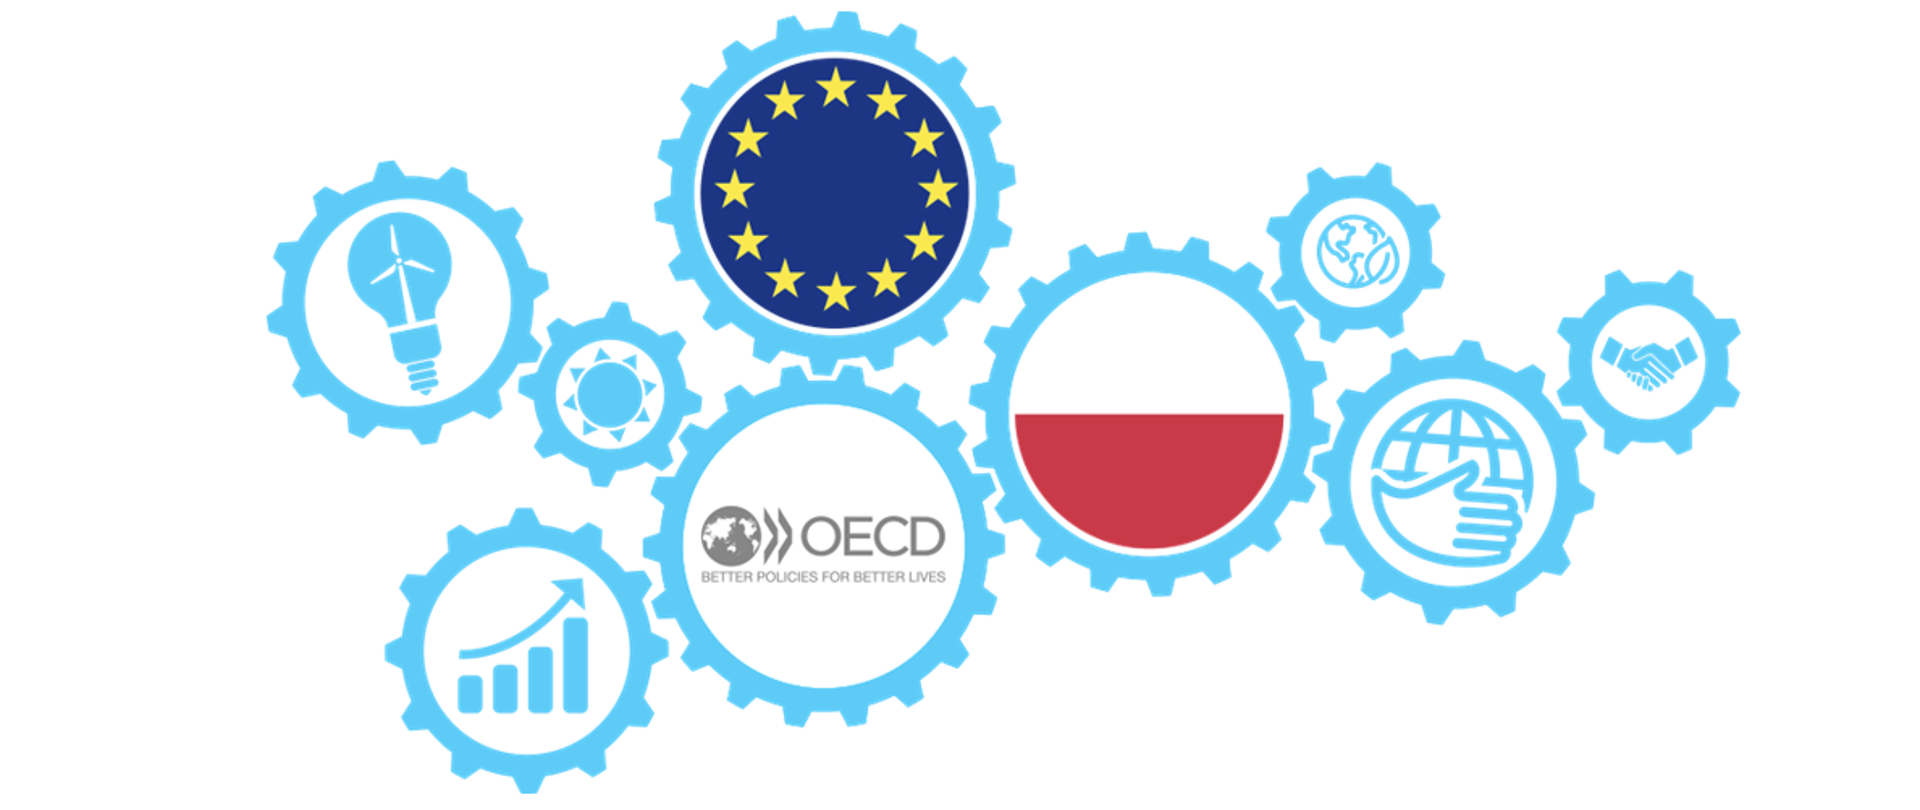 Grafika przedstawia logo projektu "Program rozwijania potencjału administracji publicznej w celu wspierania realizacji działań na rzecz SDGs i zrównoważonego rozwoju". Składa się ono z 9 jasnoniebieskich kół zębatych o różnej wielkości. W środku 3 z nich w centralnej części grafiki znajdują się: flaga Polski, flaga UE oraz logo OECD. 